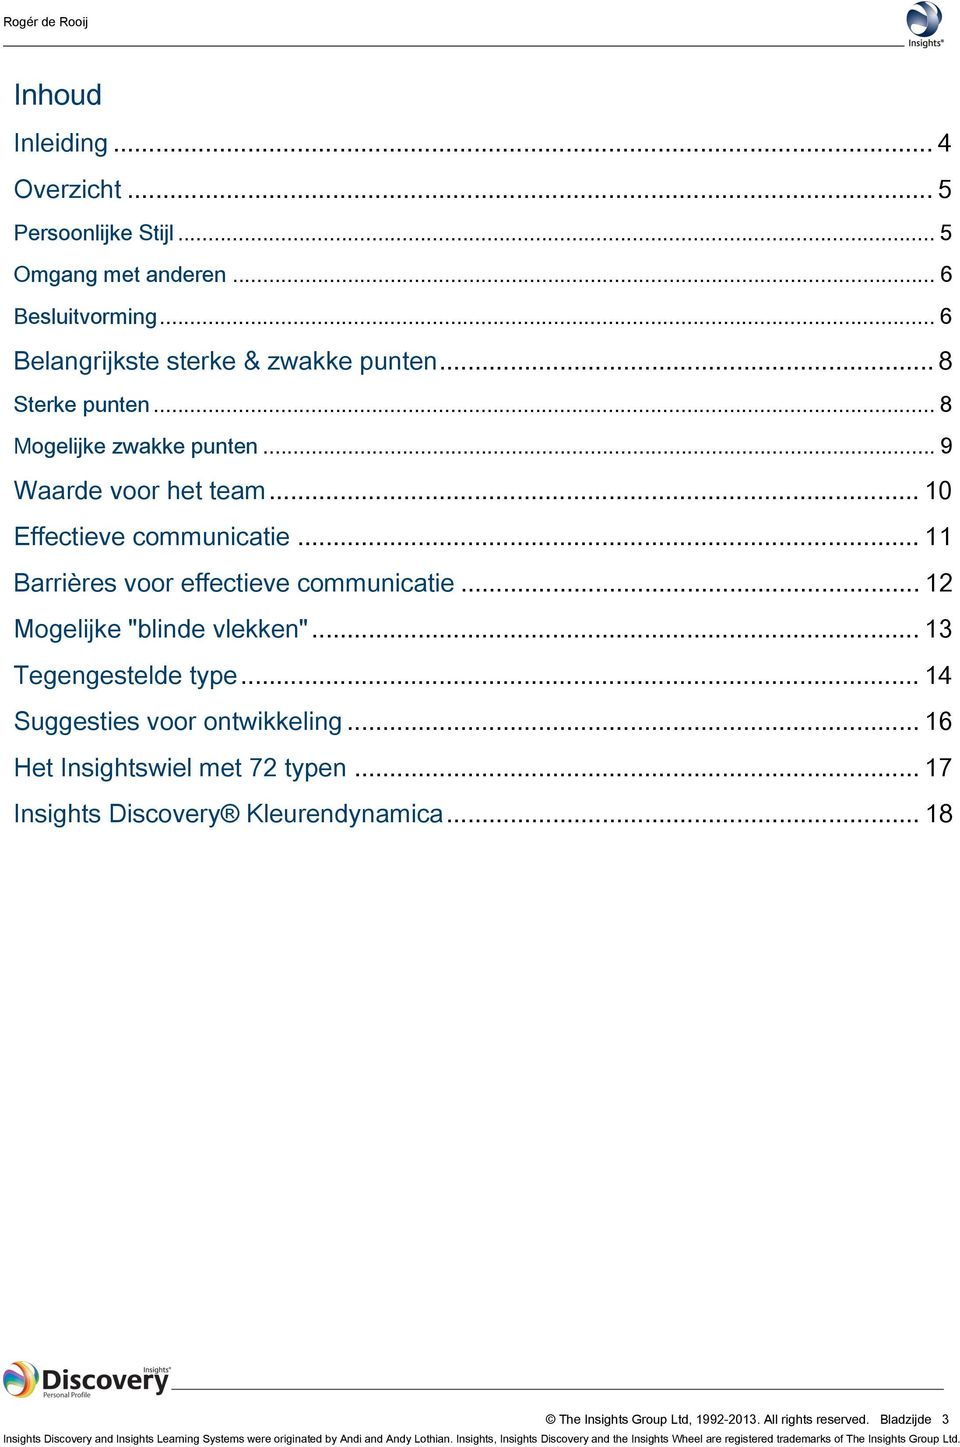 .. 13 Tegengestelde type... 14 Suggesties voor ontwikkeling... 16 Het Insightswiel met 72 typen... 17 Insights Discovery Kleurendynamica... 18 The Insights Group Ltd, 1992-2013.